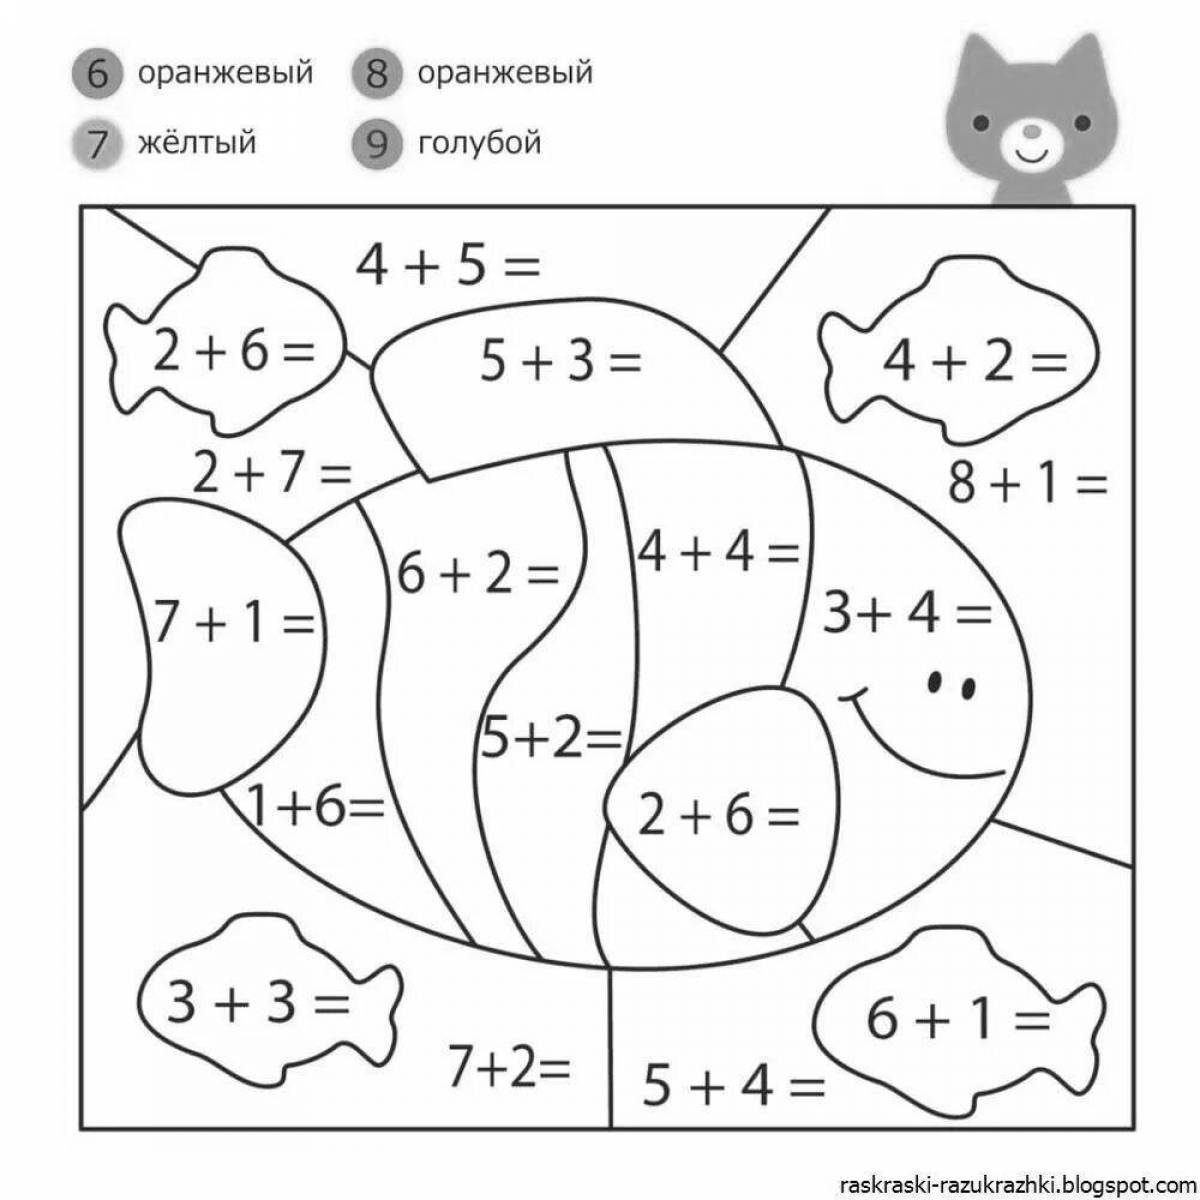 Образовательная математическая раскраска для детей 5-7 лет